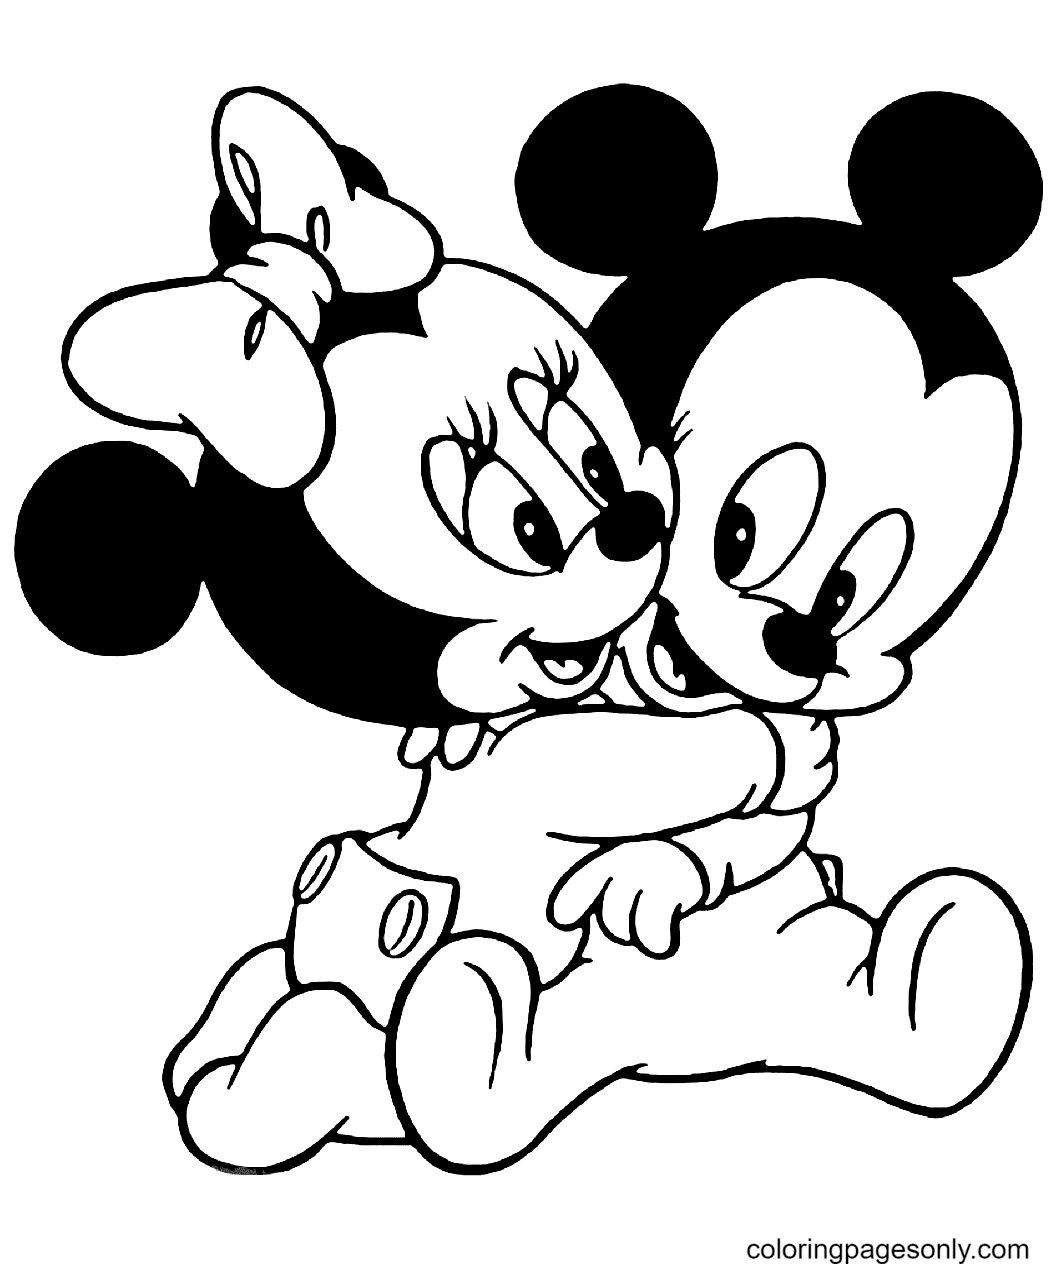 Baby Minnie Mouse e Topolino di Minnie Mouse